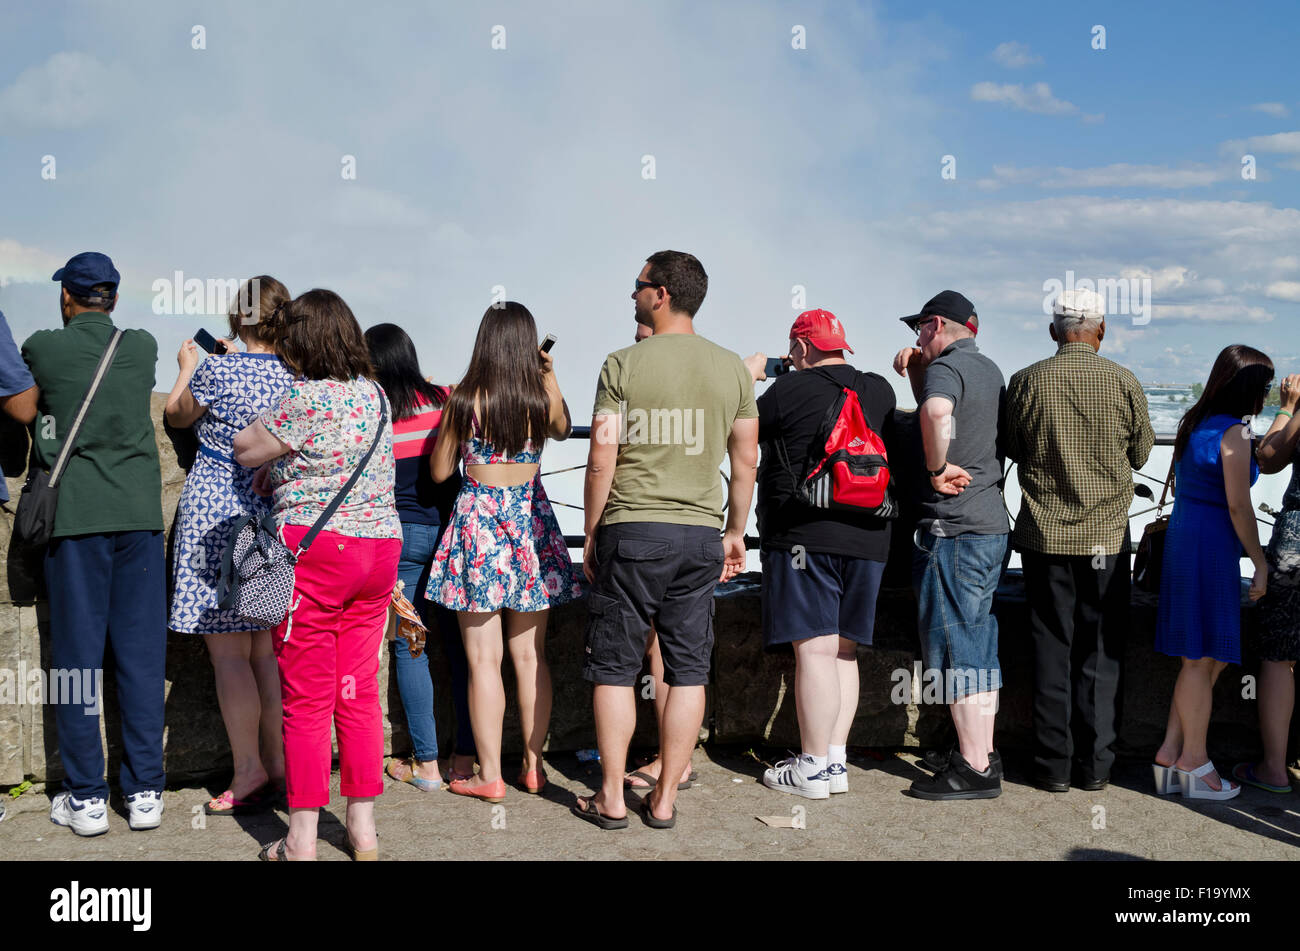 Des foules de touristes regarder et prendre des photos des chutes du Niagara du côté canadien. Groupe de personnes regardant des chutes canadiennes. Banque D'Images